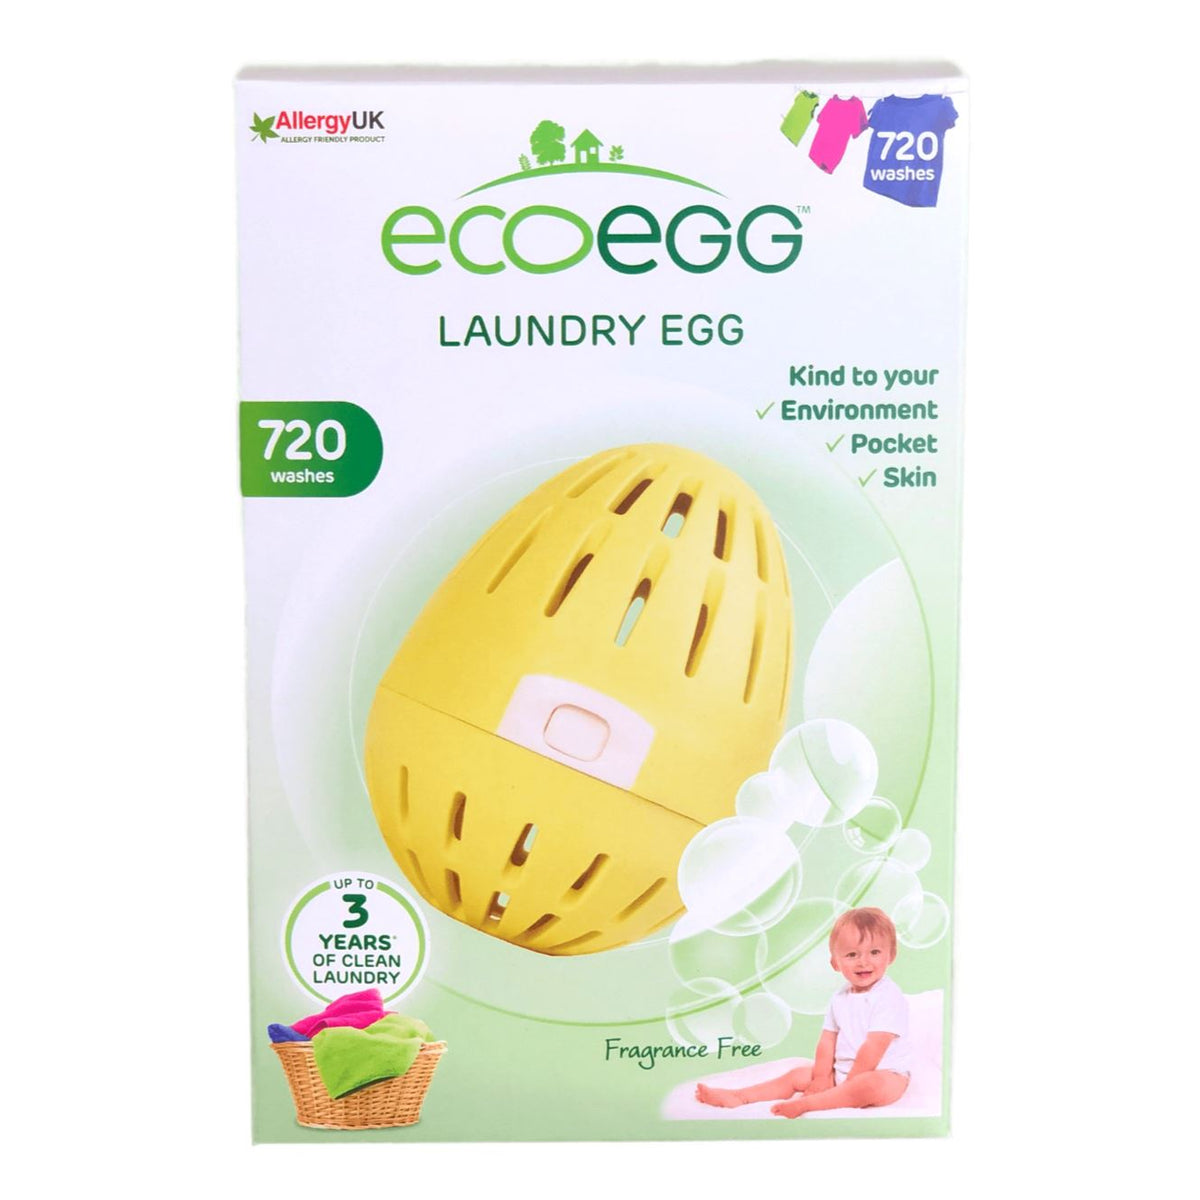 I de fleste tilfælde medlem lektier Ecoegg - Vaskeæg uden duft - 720 vaske - allergivenlig – Suztain A/S